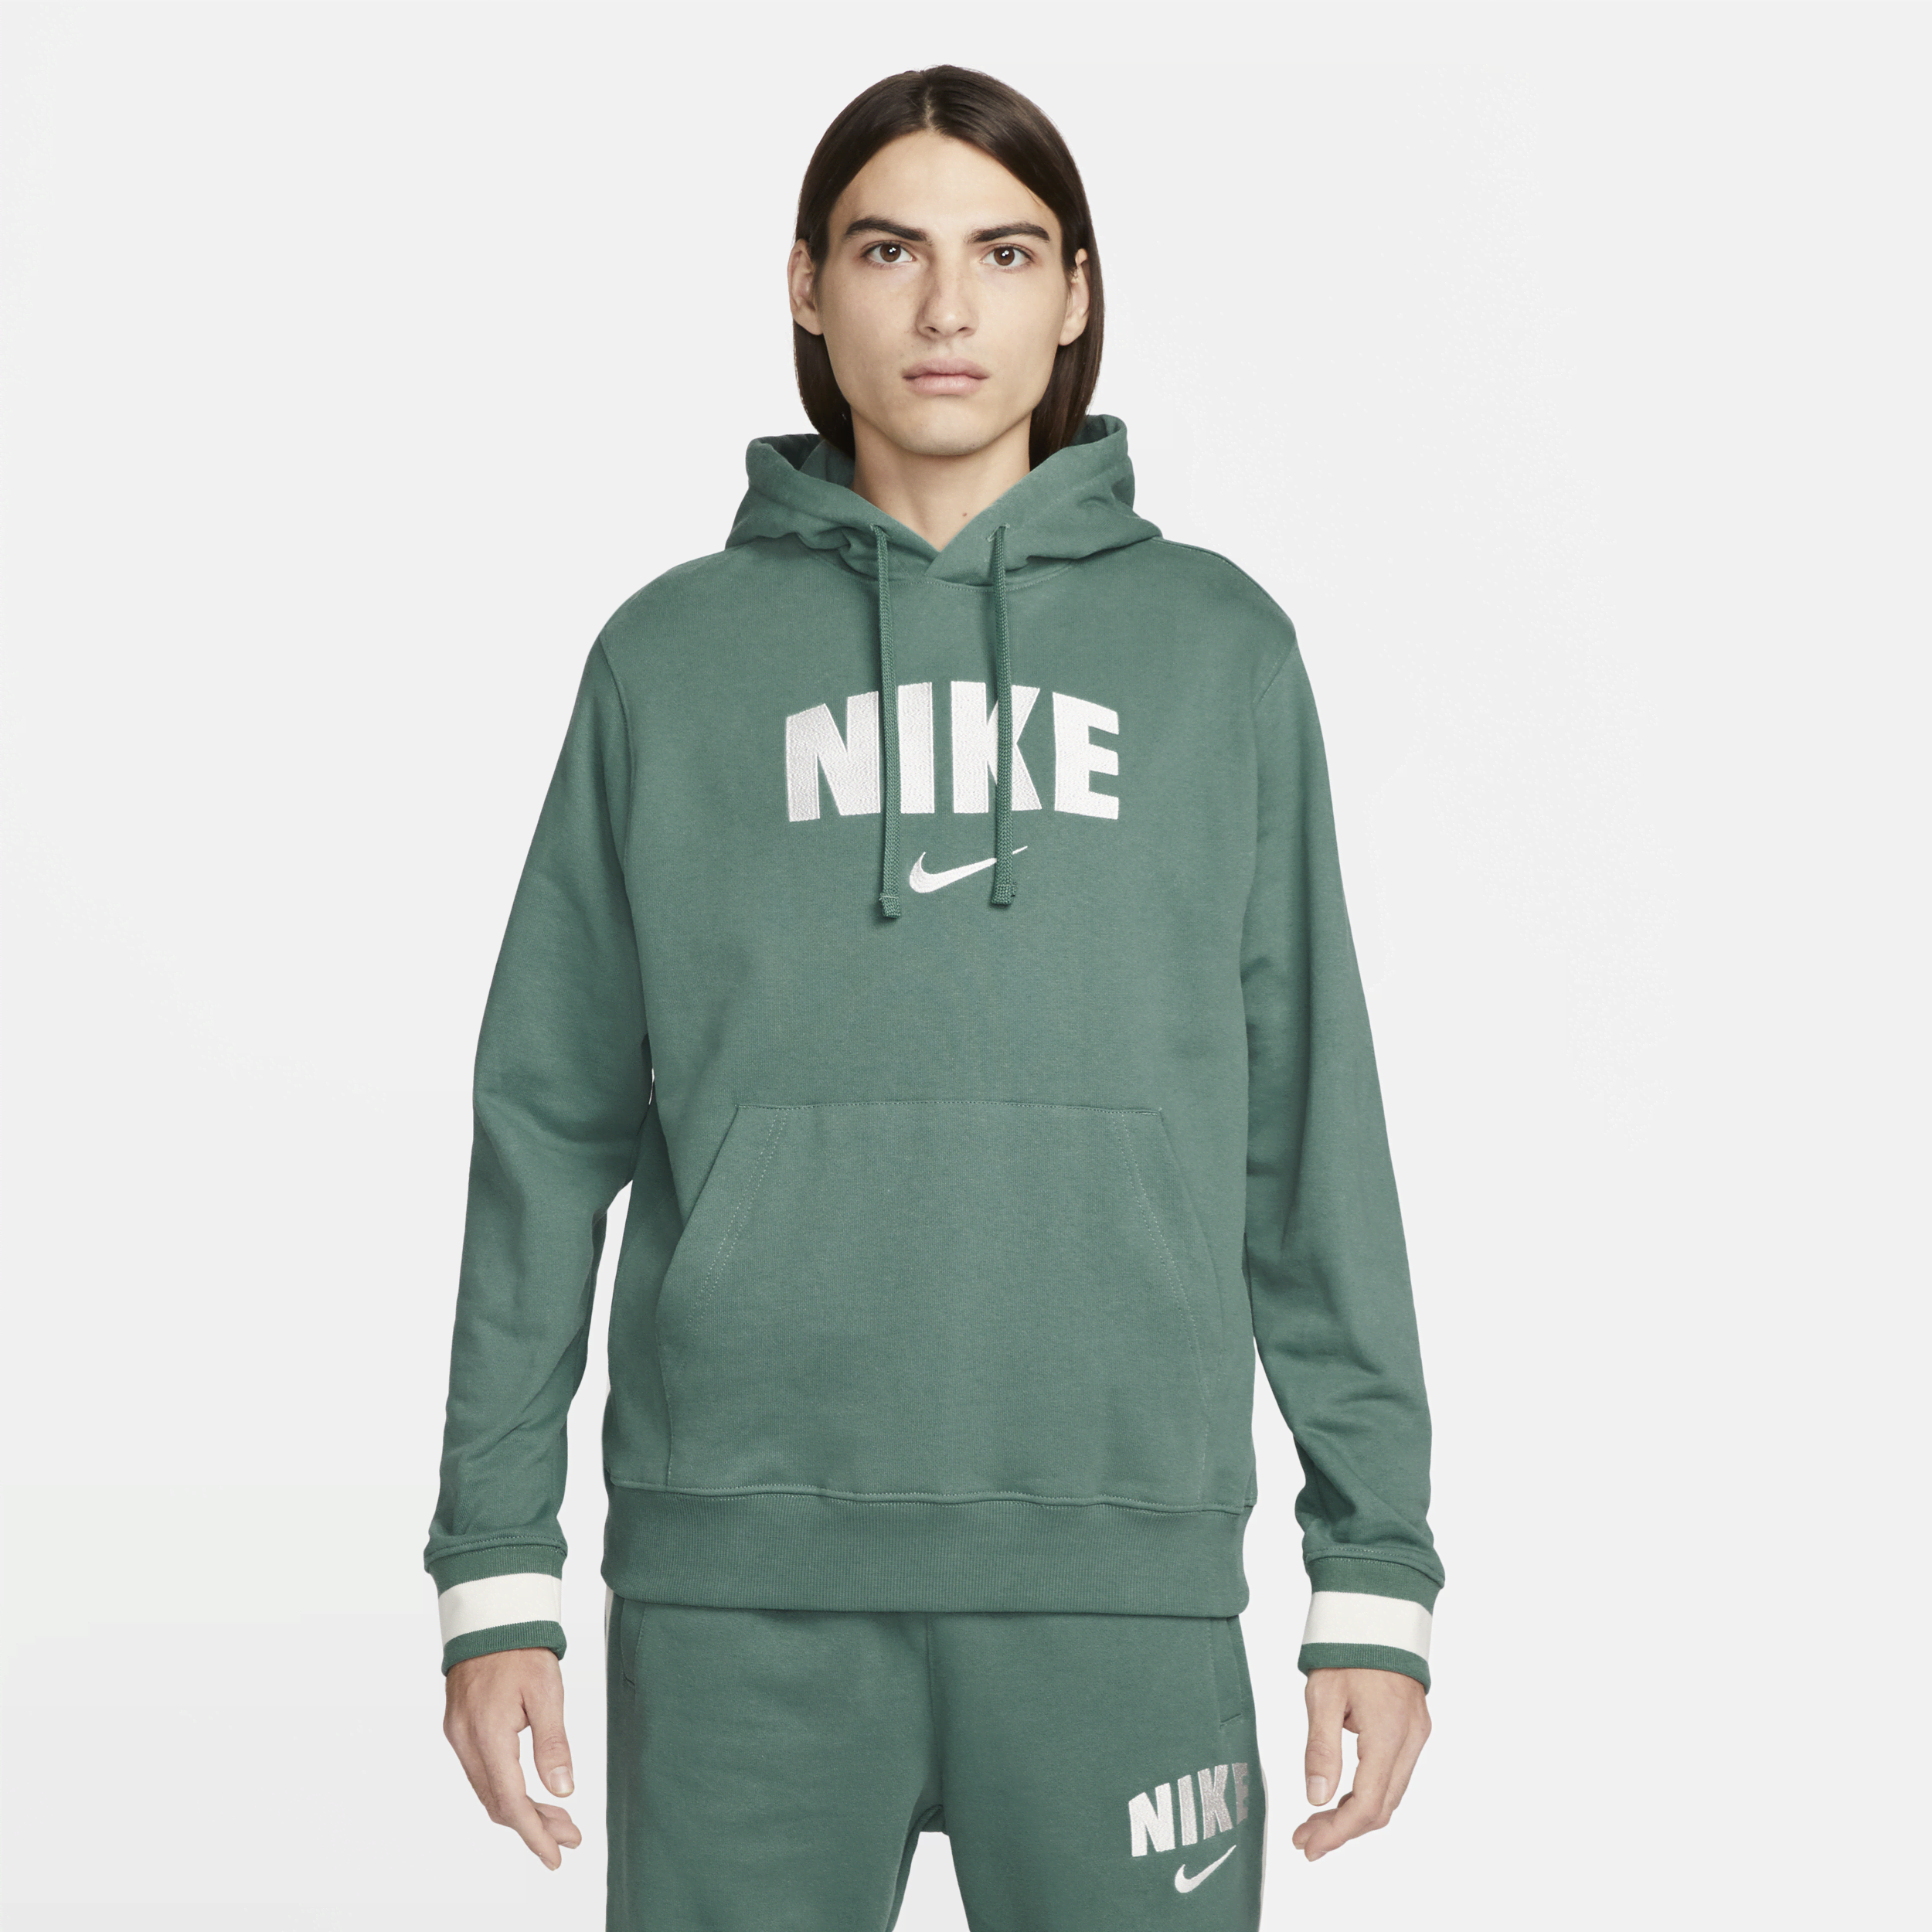 Nike Sportswear-retro-pullover-hættetrøje i fleece til mænd - grøn